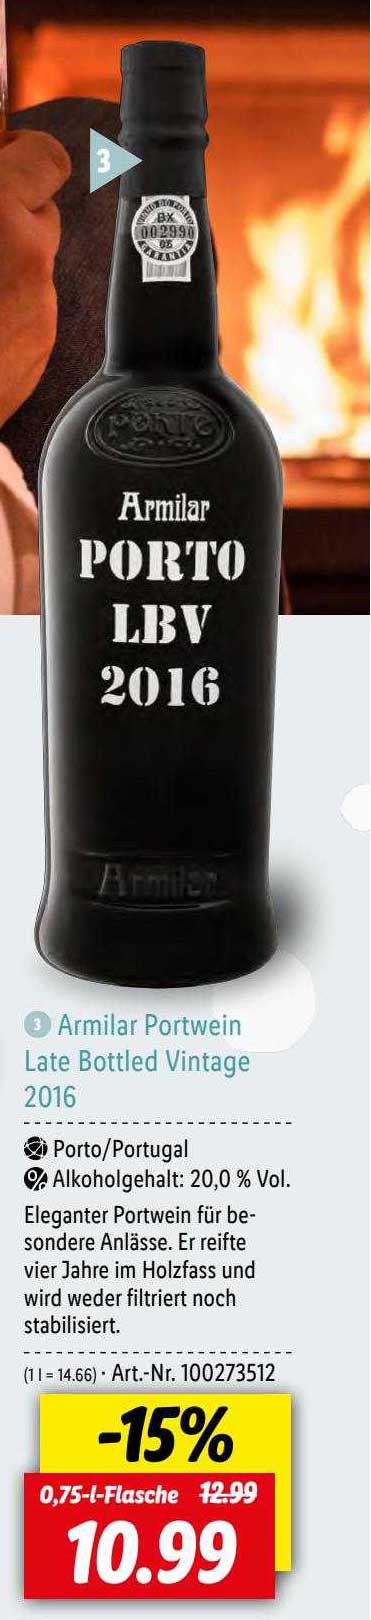 Late 2016 Angebot Armilar Bottled Vintage Portwein Lidl bei